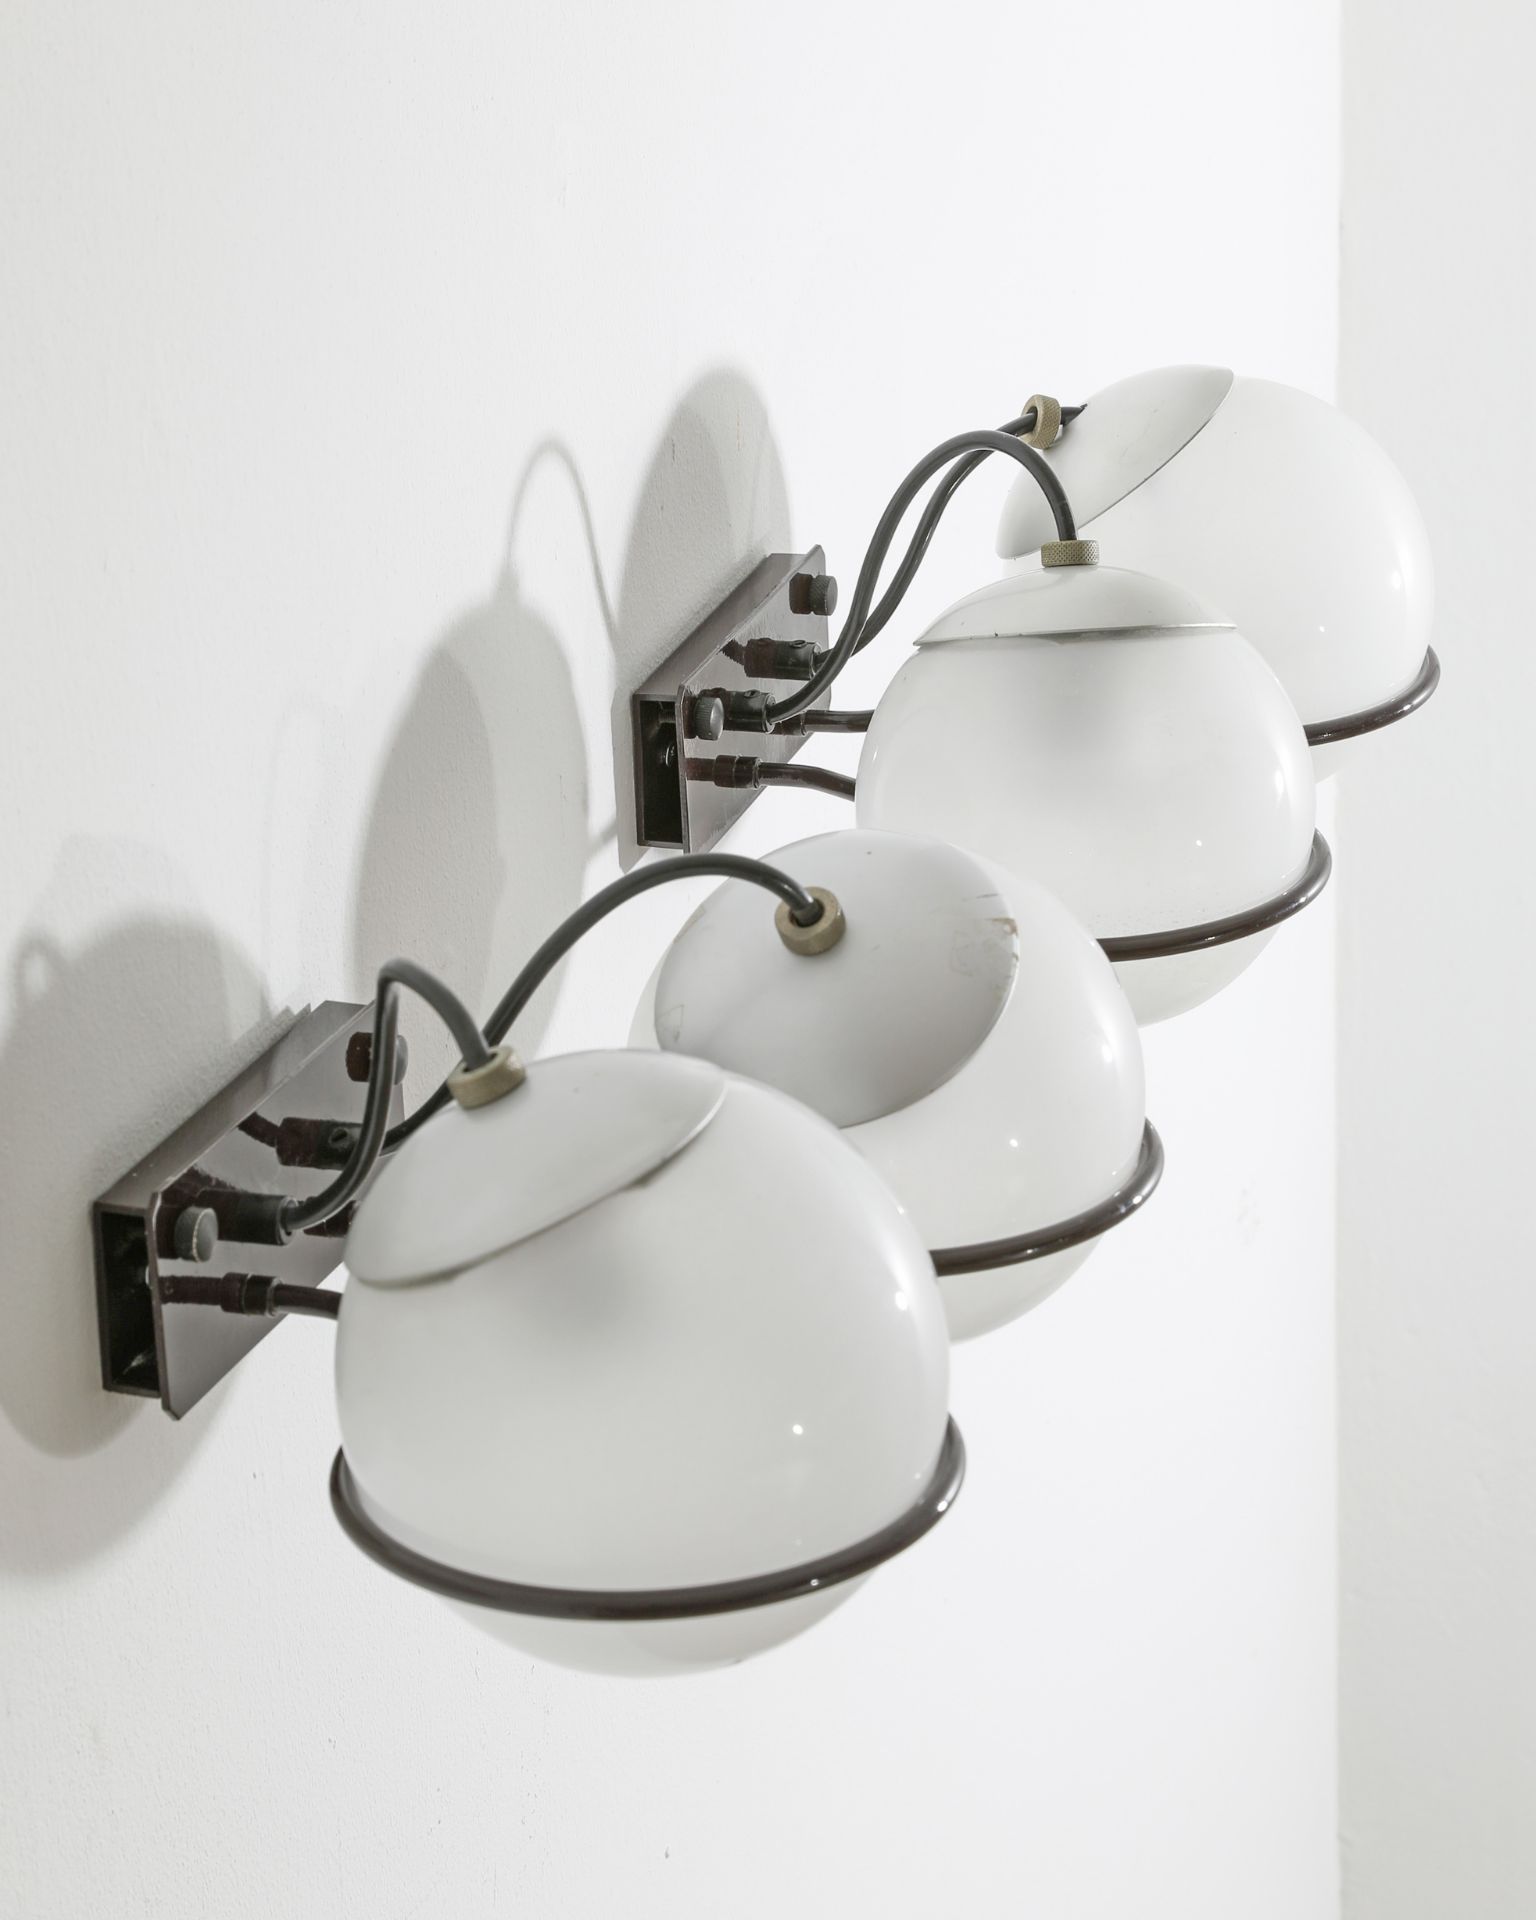 Gino Sarfatti, Arteluce, 2 Wall Lamps Model 237/2